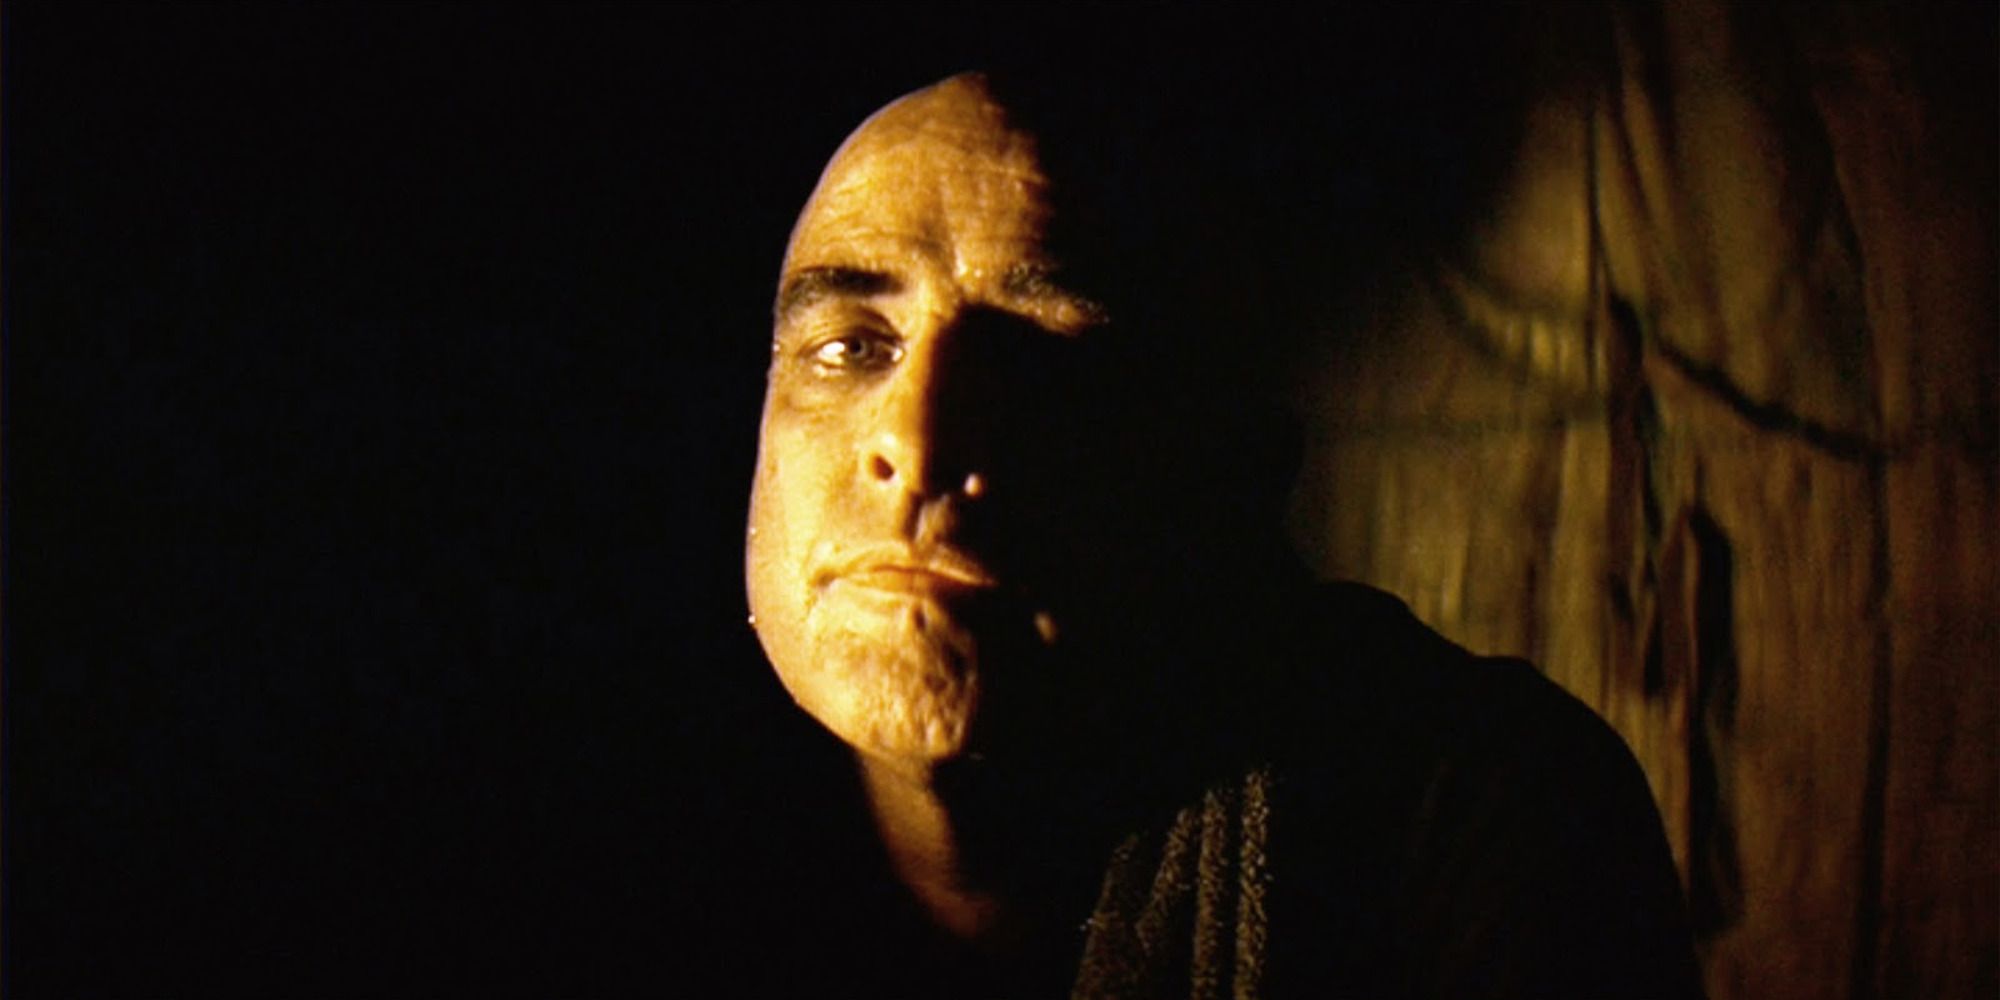 Le colonel Kurtz d'Apocalypse Now, se profilant dans l'ombre, fixant la caméra.